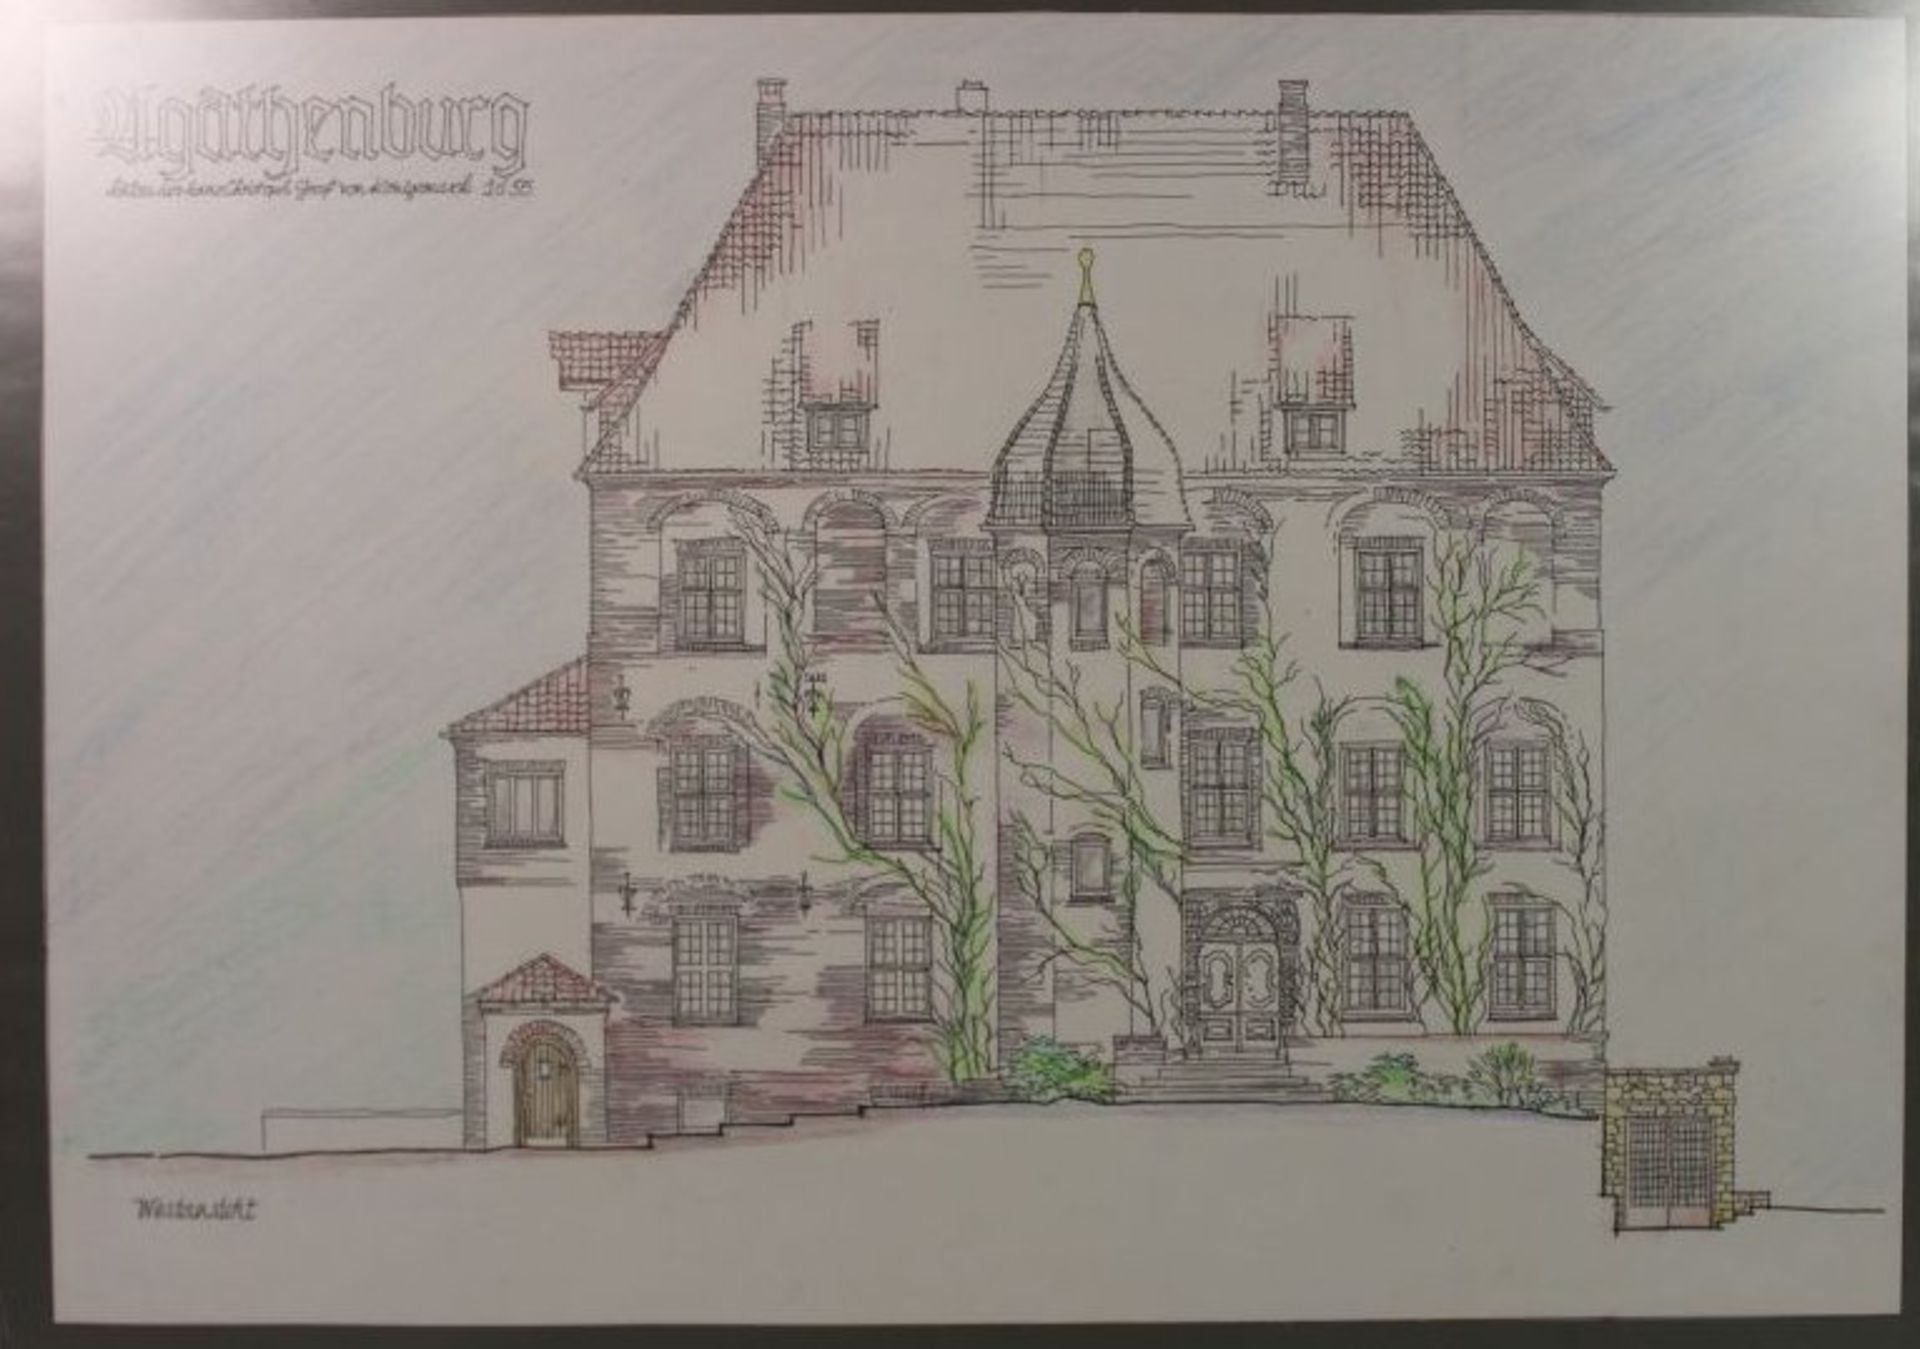 Ansicht des Schlosses Agathenburg, Architektenzeichnung per Rapidomat , BG 27 x 40cm.